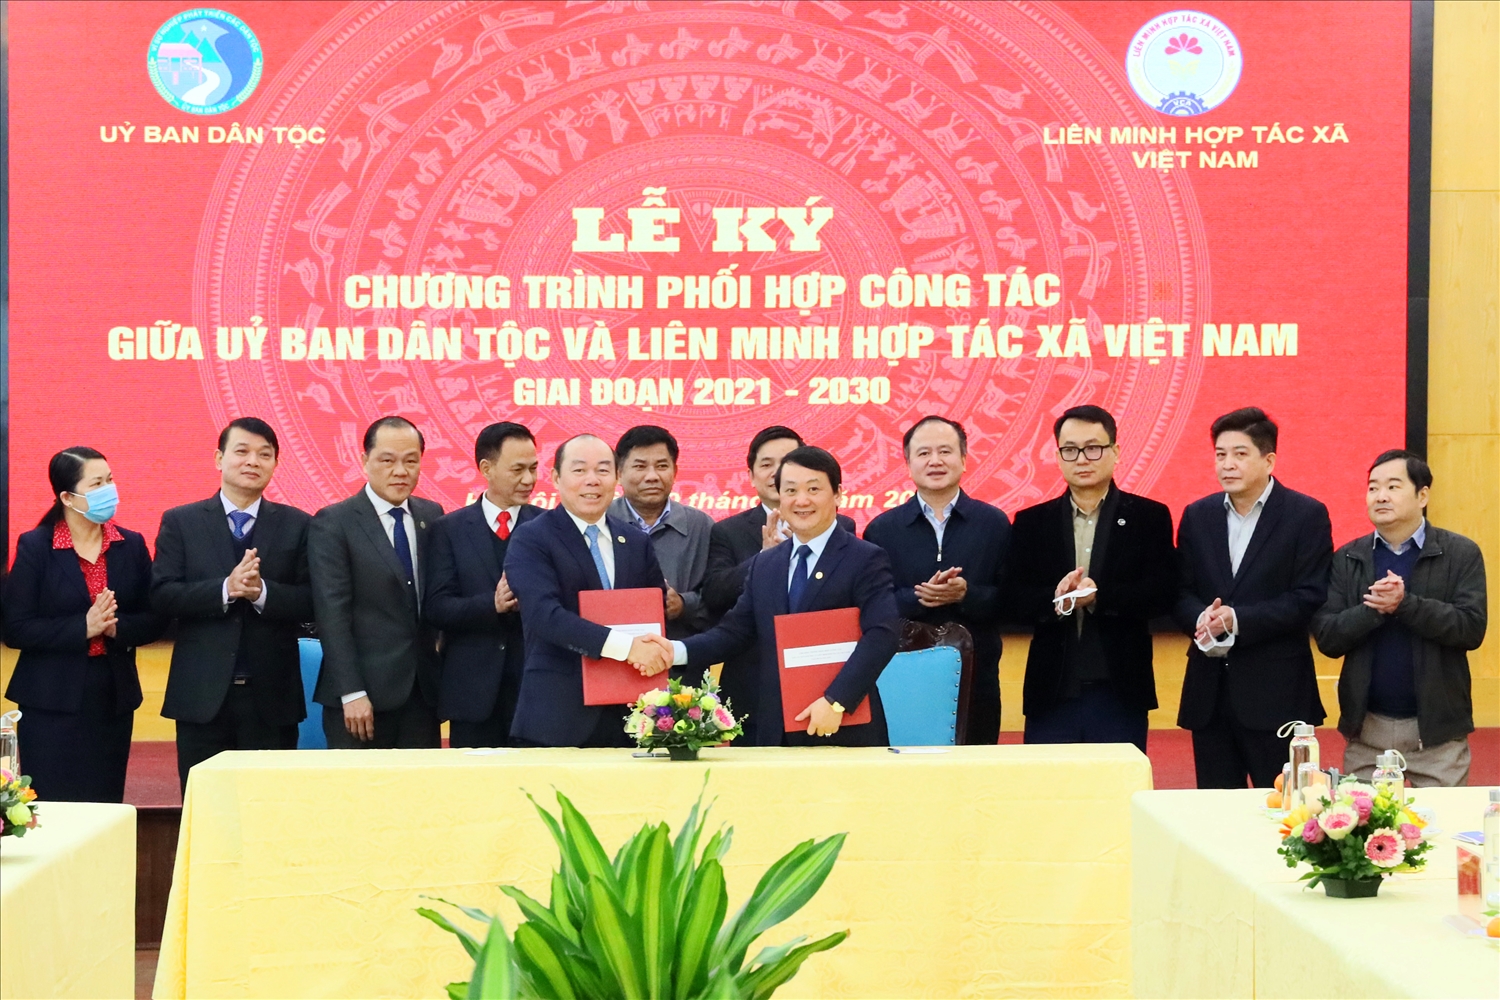 Bộ trưởng, Chủ nhiệm Ủy ban Dân tộc Hầu A Lềnh và Chủ tịch Liên minh HTX Việt Nam Nguyễn Ngọc Bảo ký Chương trình phối hợp công tác giai đoạn 2021 - 2030